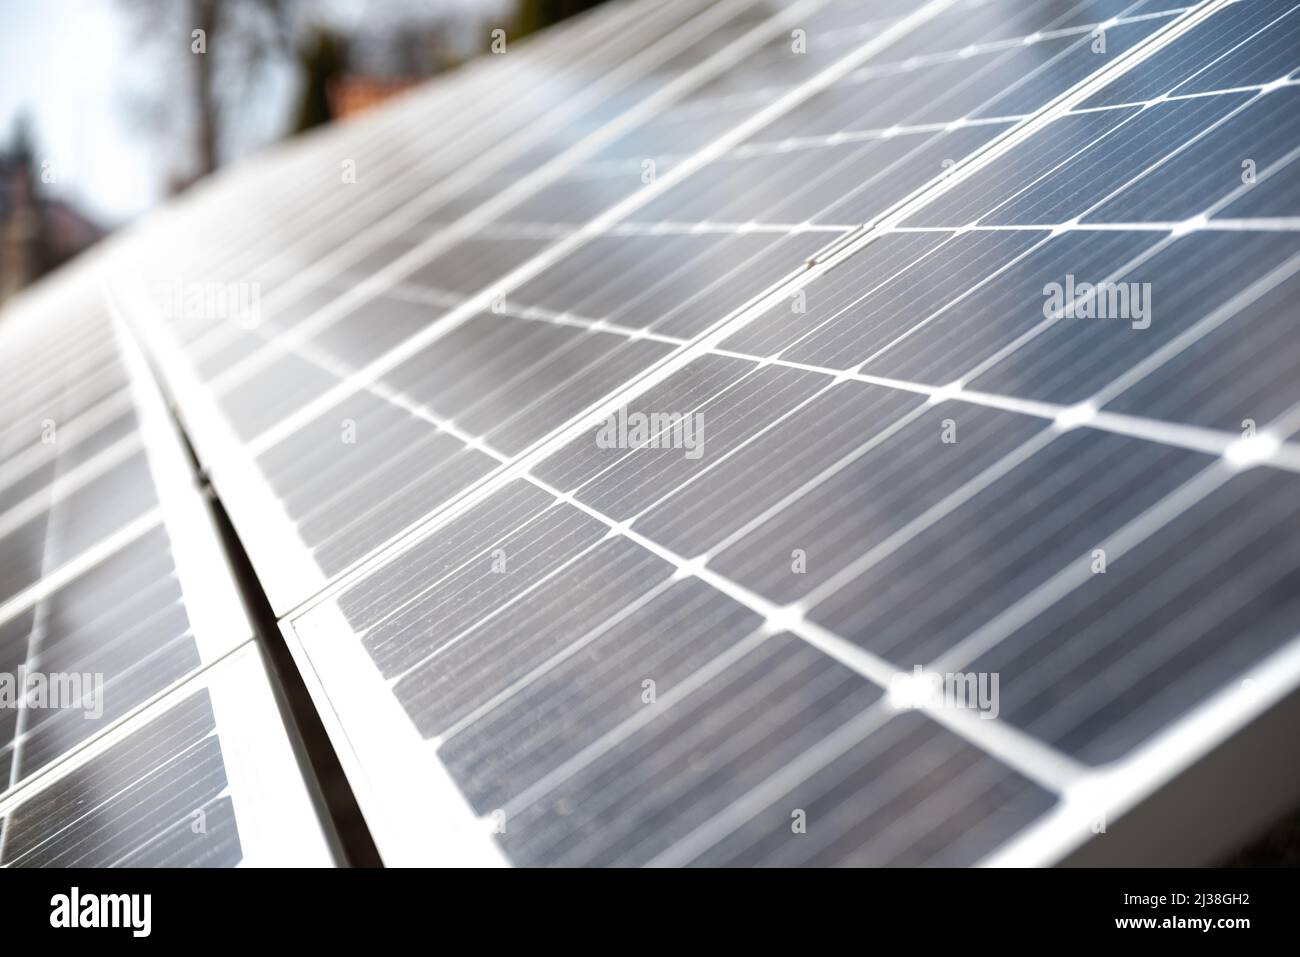 Photovoltaikmodule, eine alternative Stromquelle zu Kohlekraftwerken. Eine Möglichkeit, die Stromkosten zu senken, ohne die Umwelt zu schädigen Stockfoto